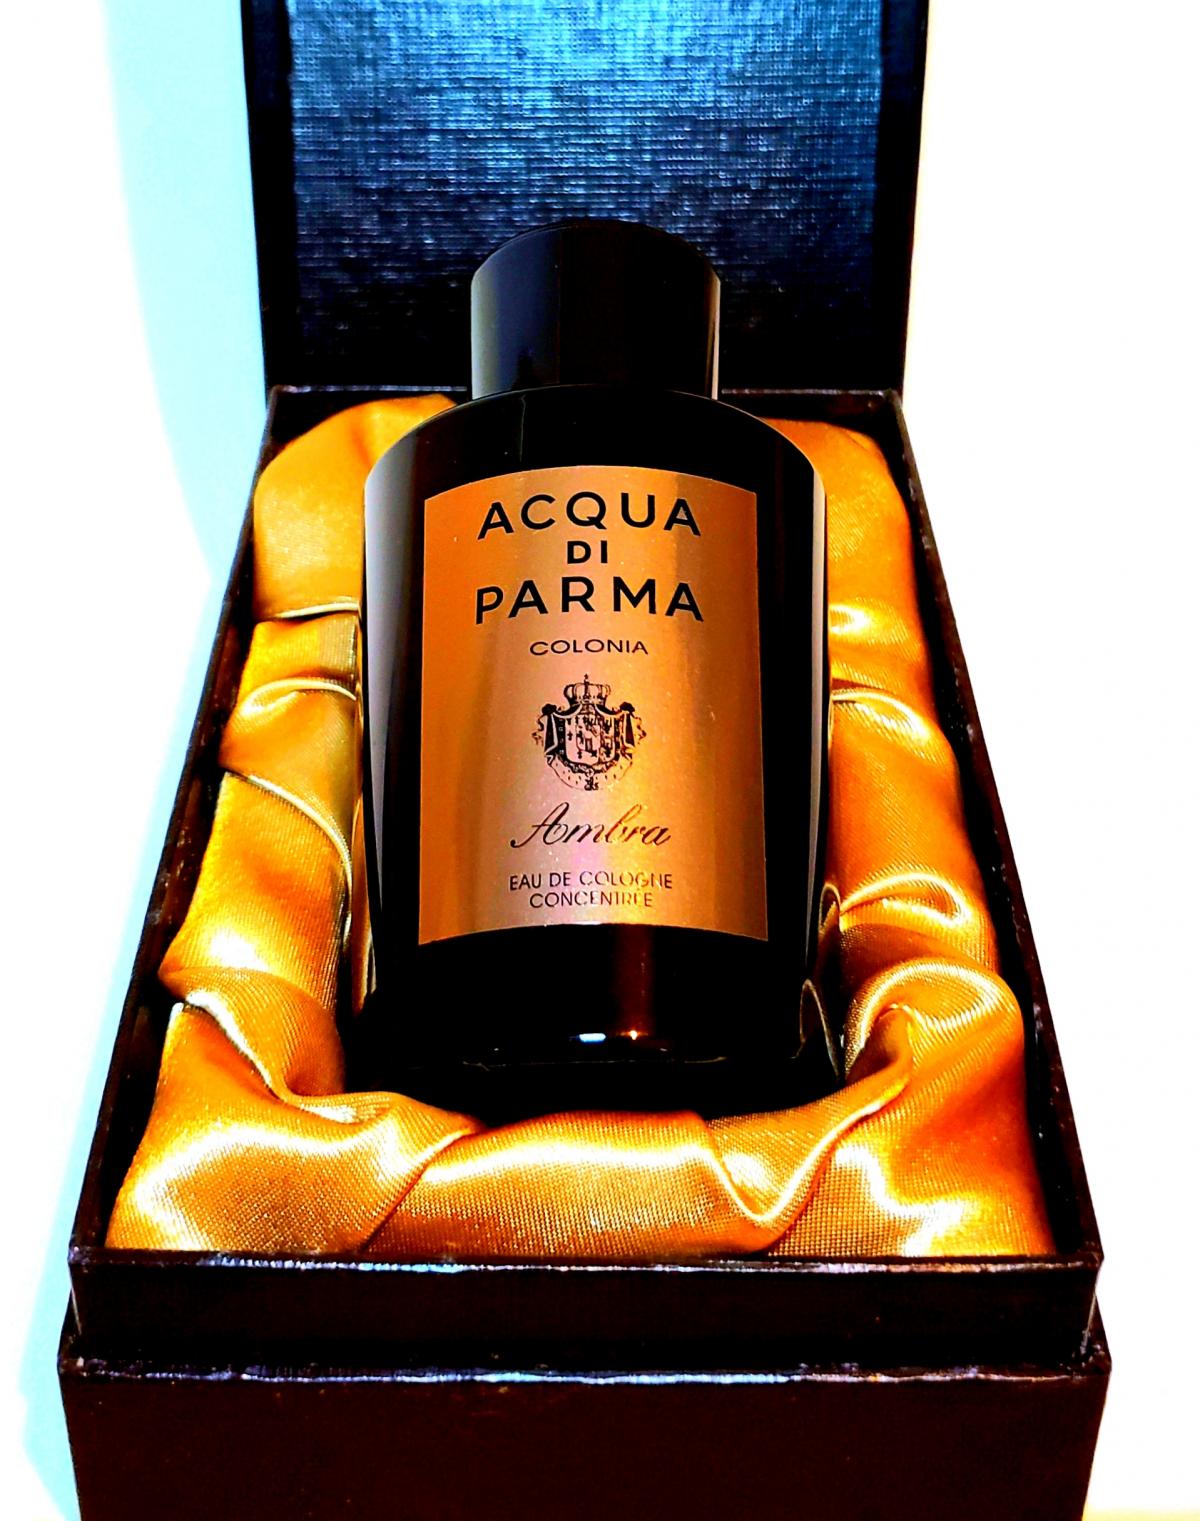 Colonia Ambra Acqua di Parma cologne - a fragrance for men 2015